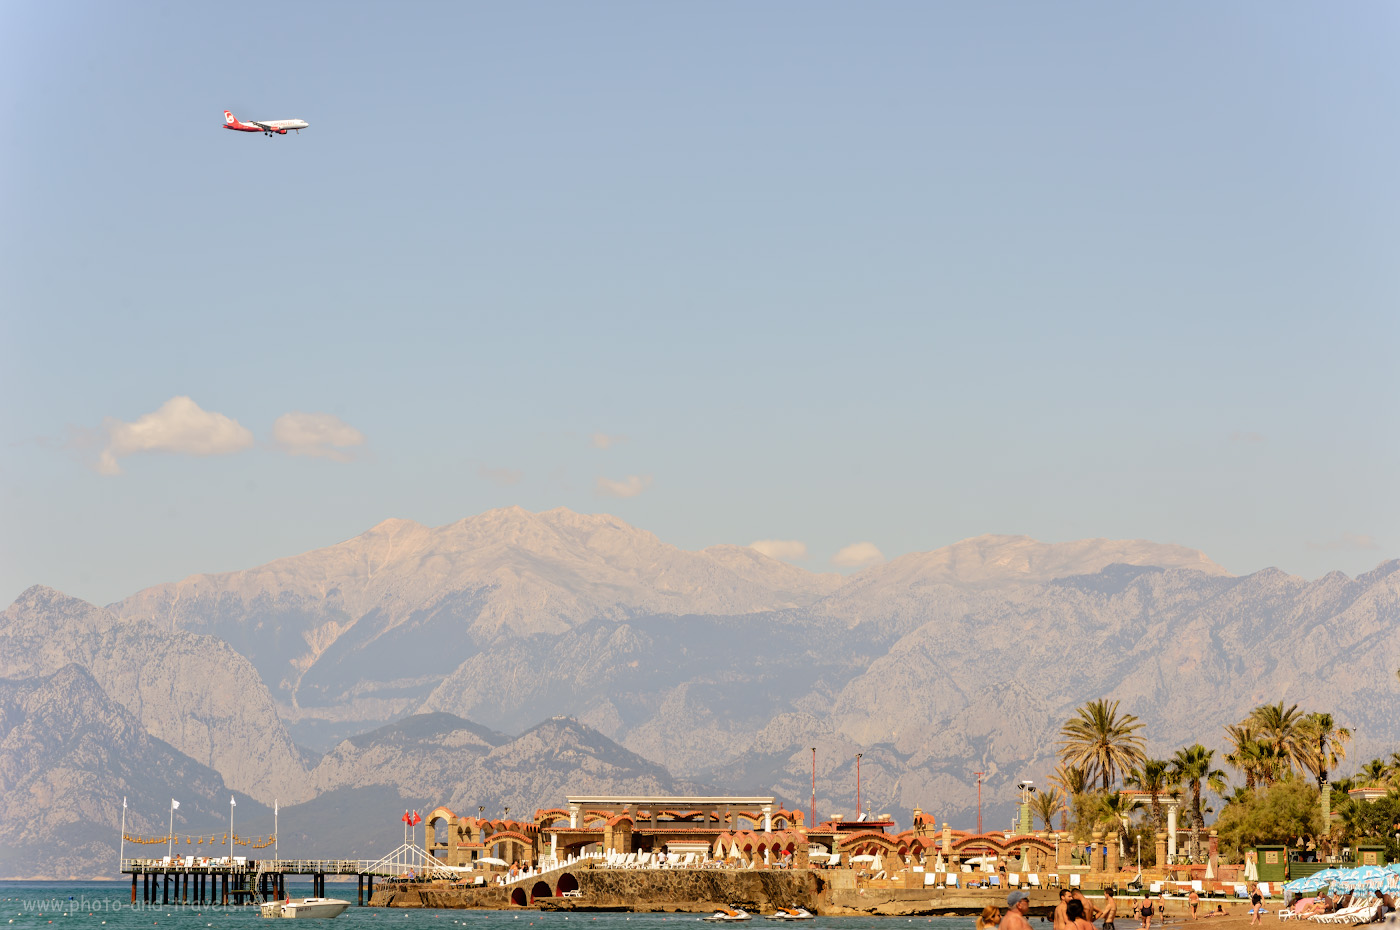 Фото 6. Самолет идет на посадку в аэропорт Анталии. Снято во время отдыха в Турции на пляже Лара. 1/640, +0.67, 8.0, 250, 140.